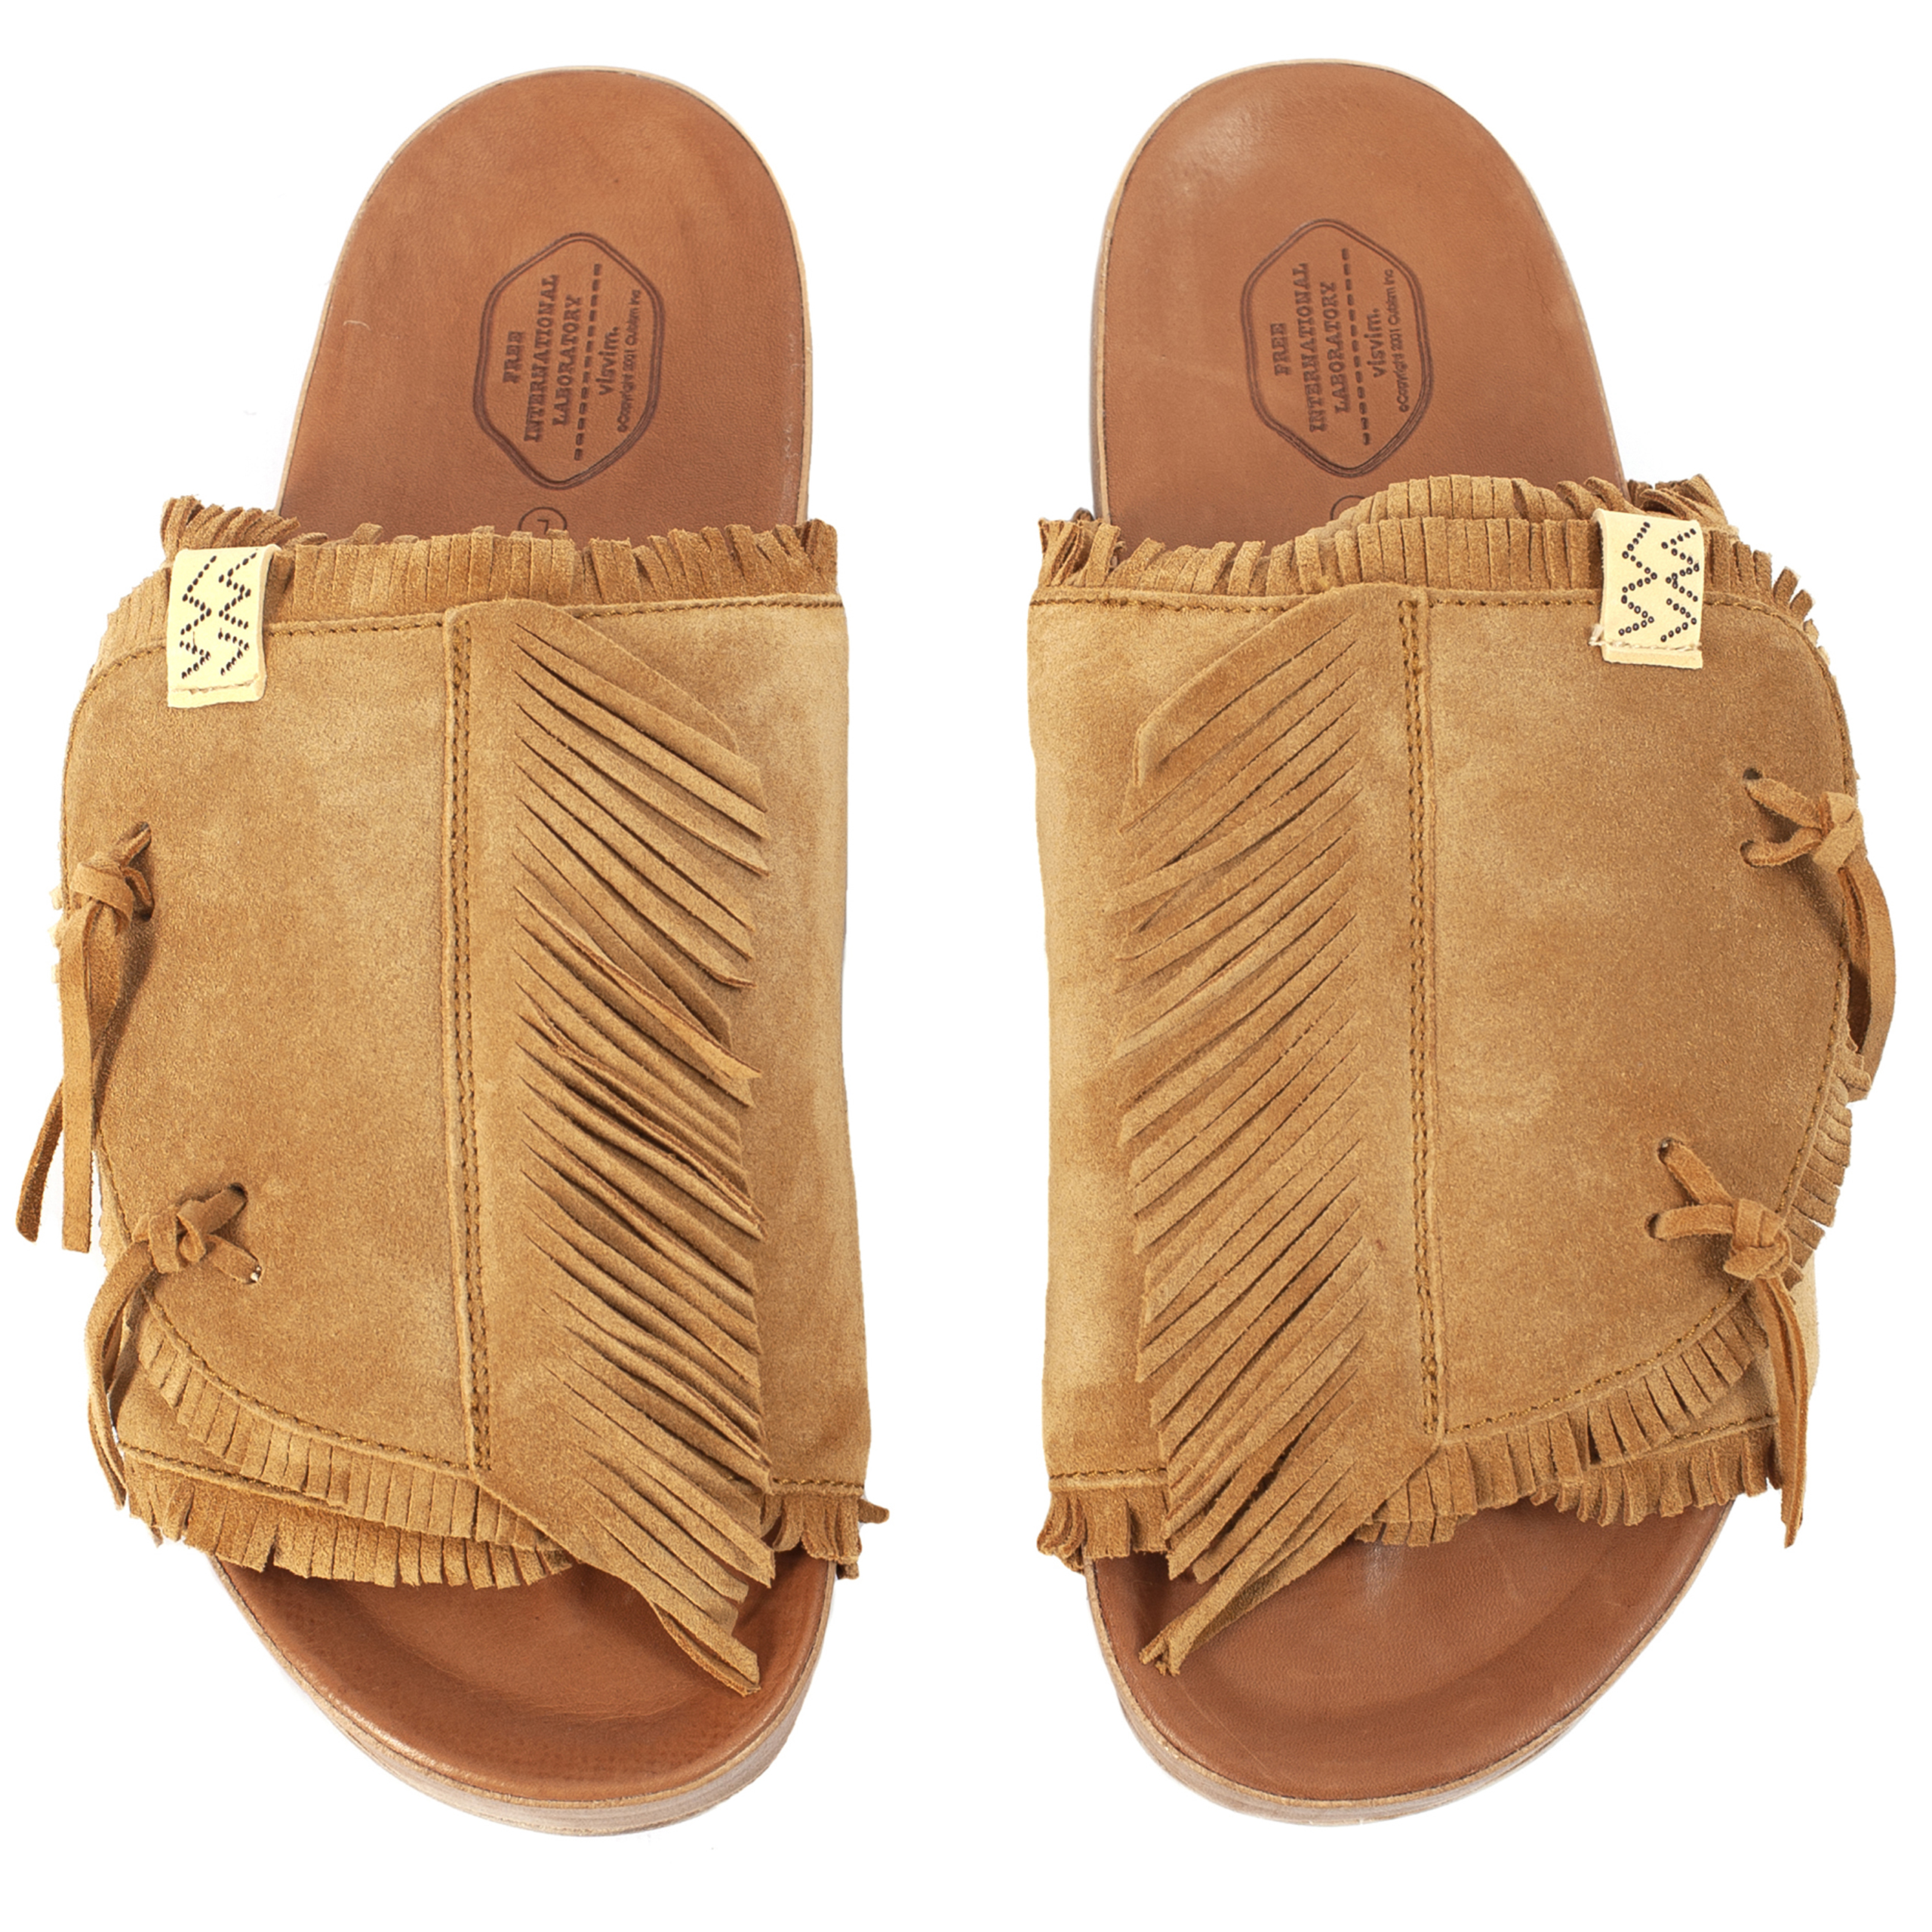 Buy visvim men brown christo shaman-folk sandals for $920 online